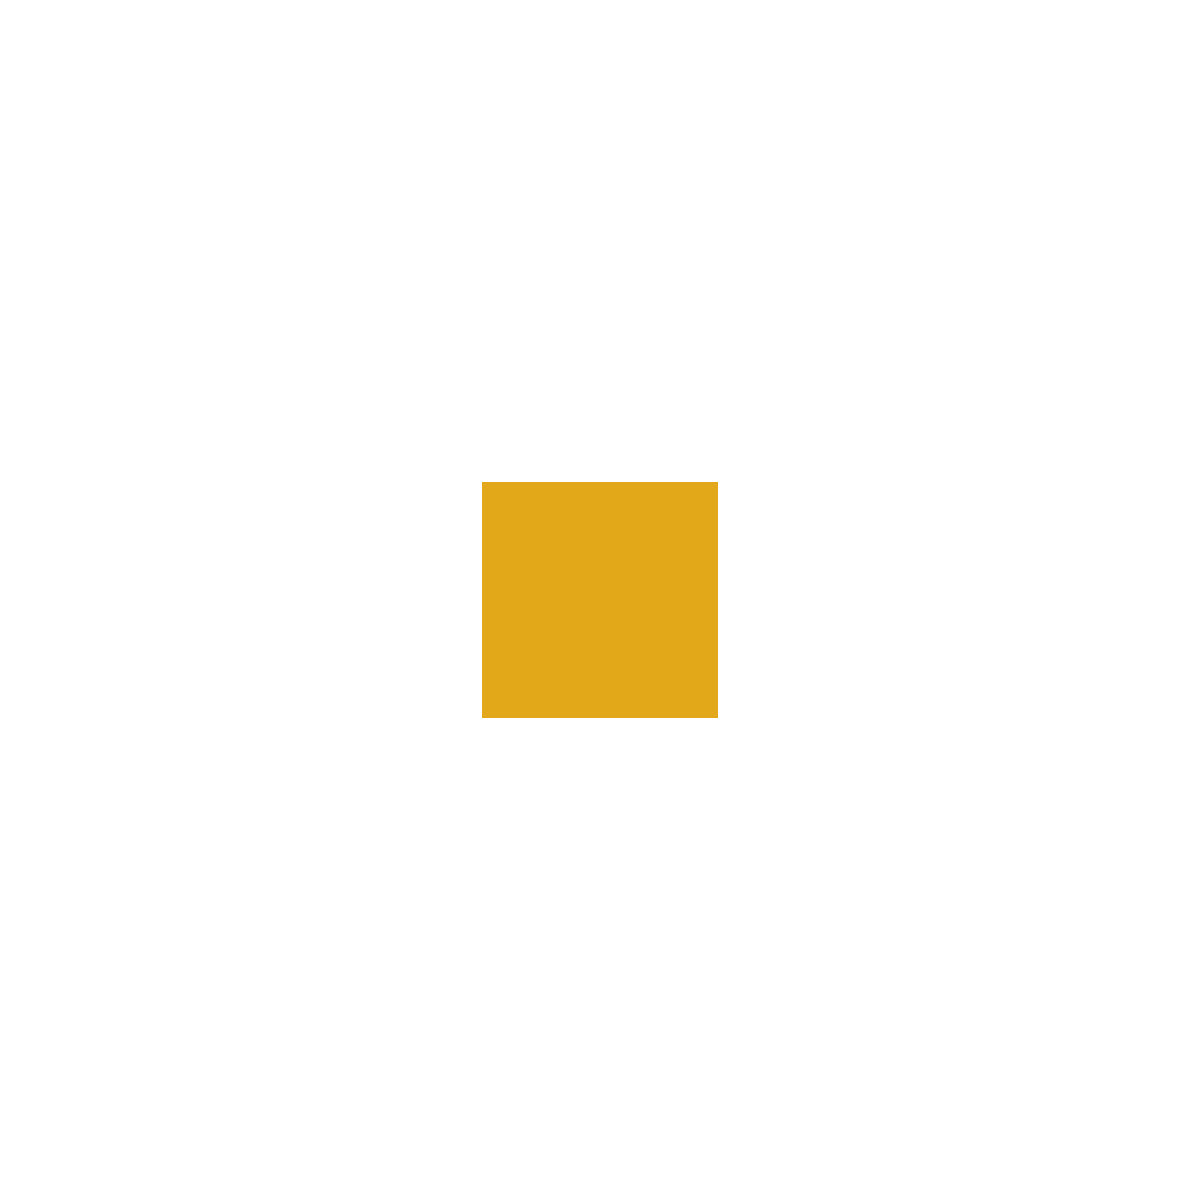 Protuklizna boja za označavanje hala, posuda od 5 l, u žutoj boji-9